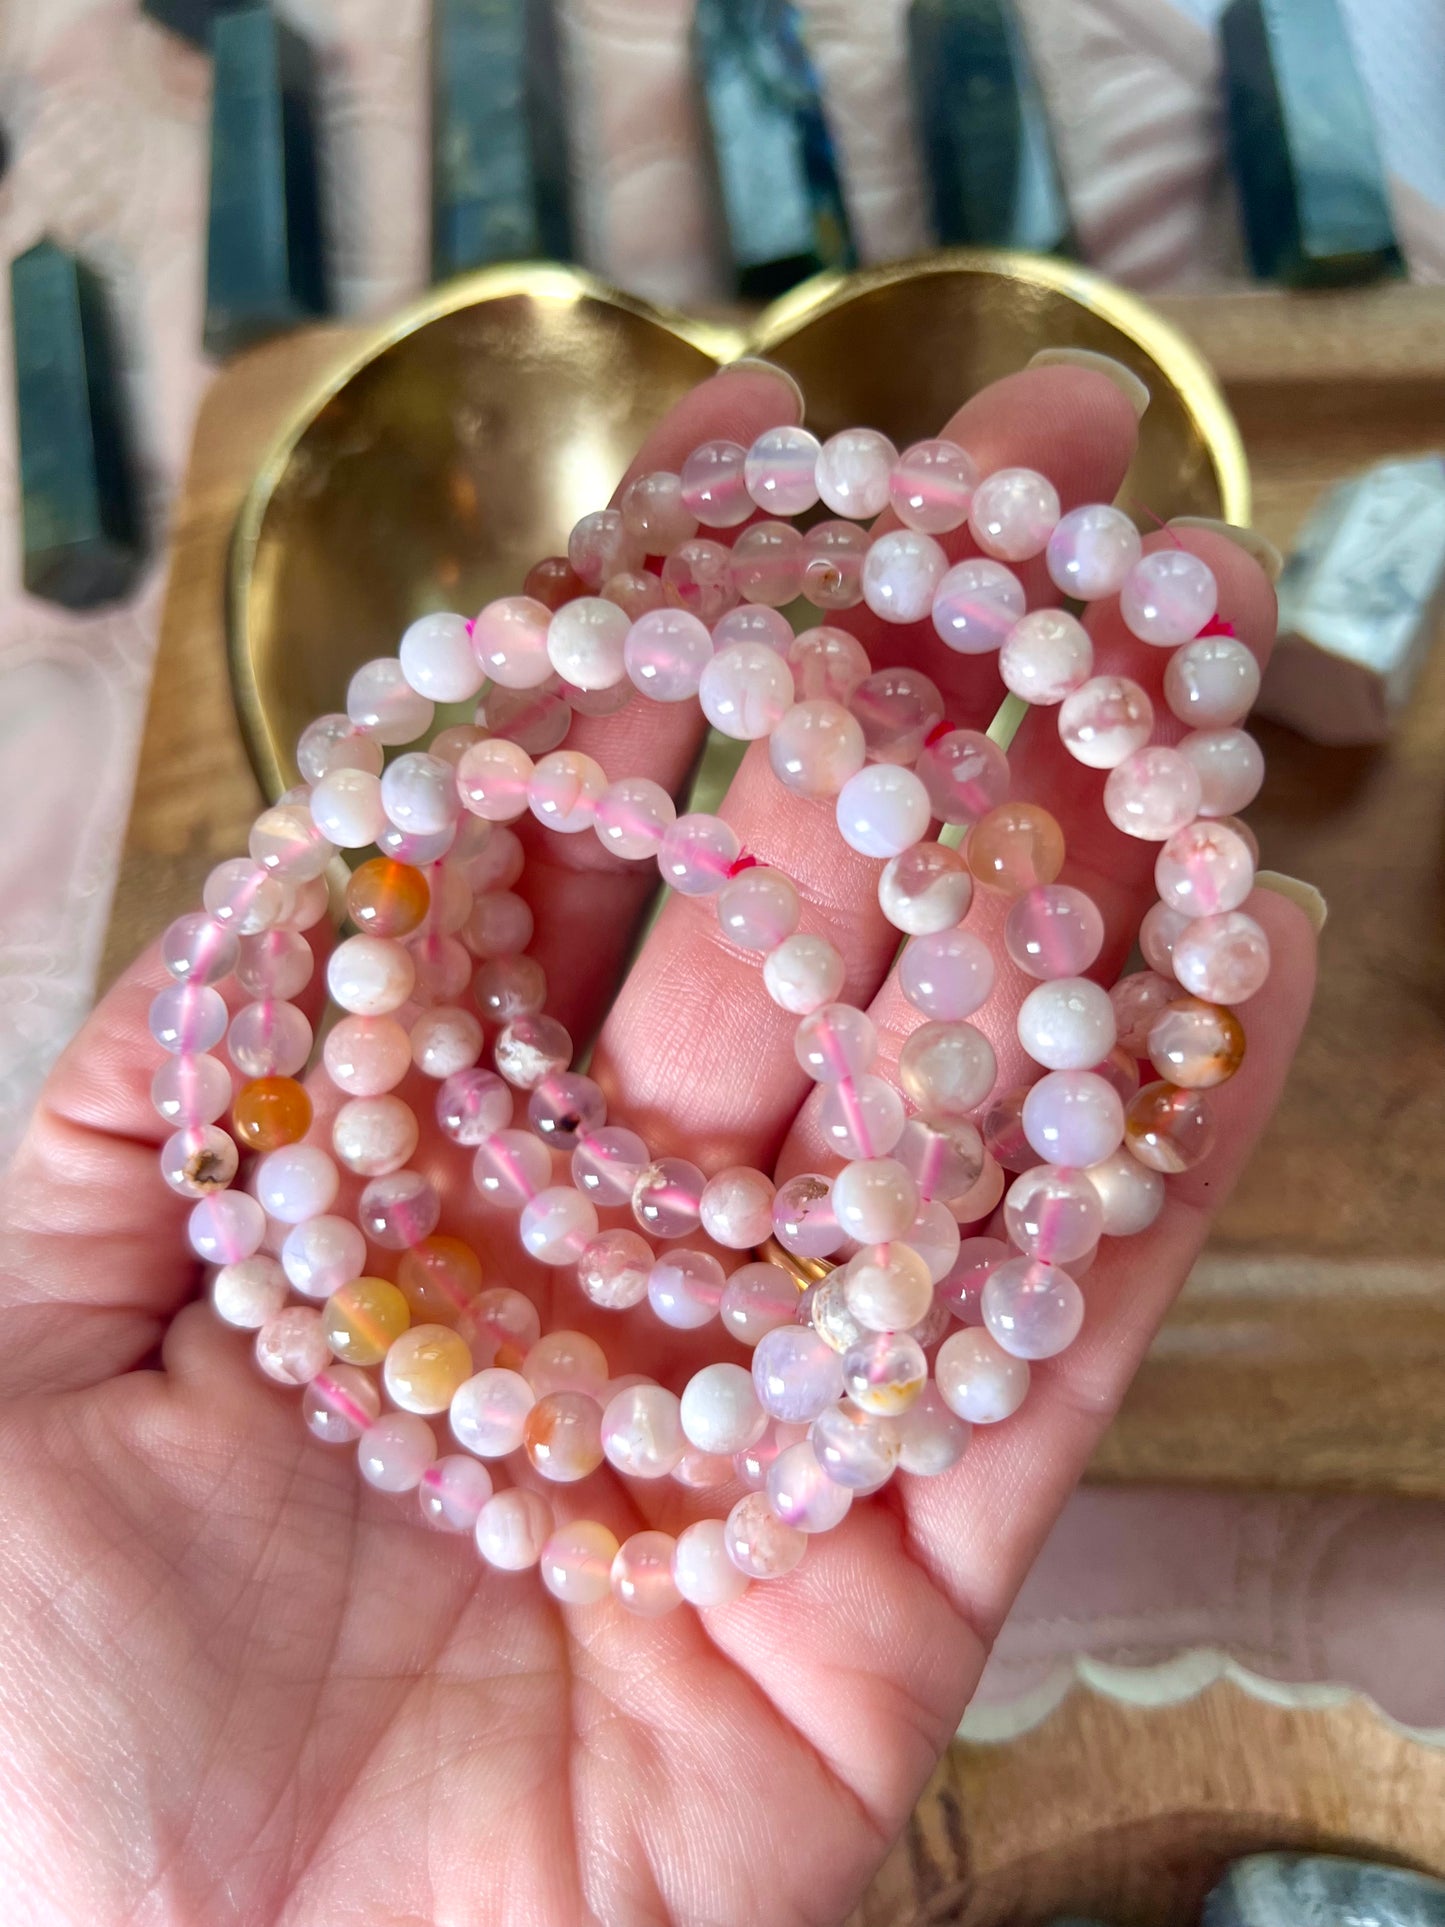 Flower Agate Crystal Healing Bracelets in Mini